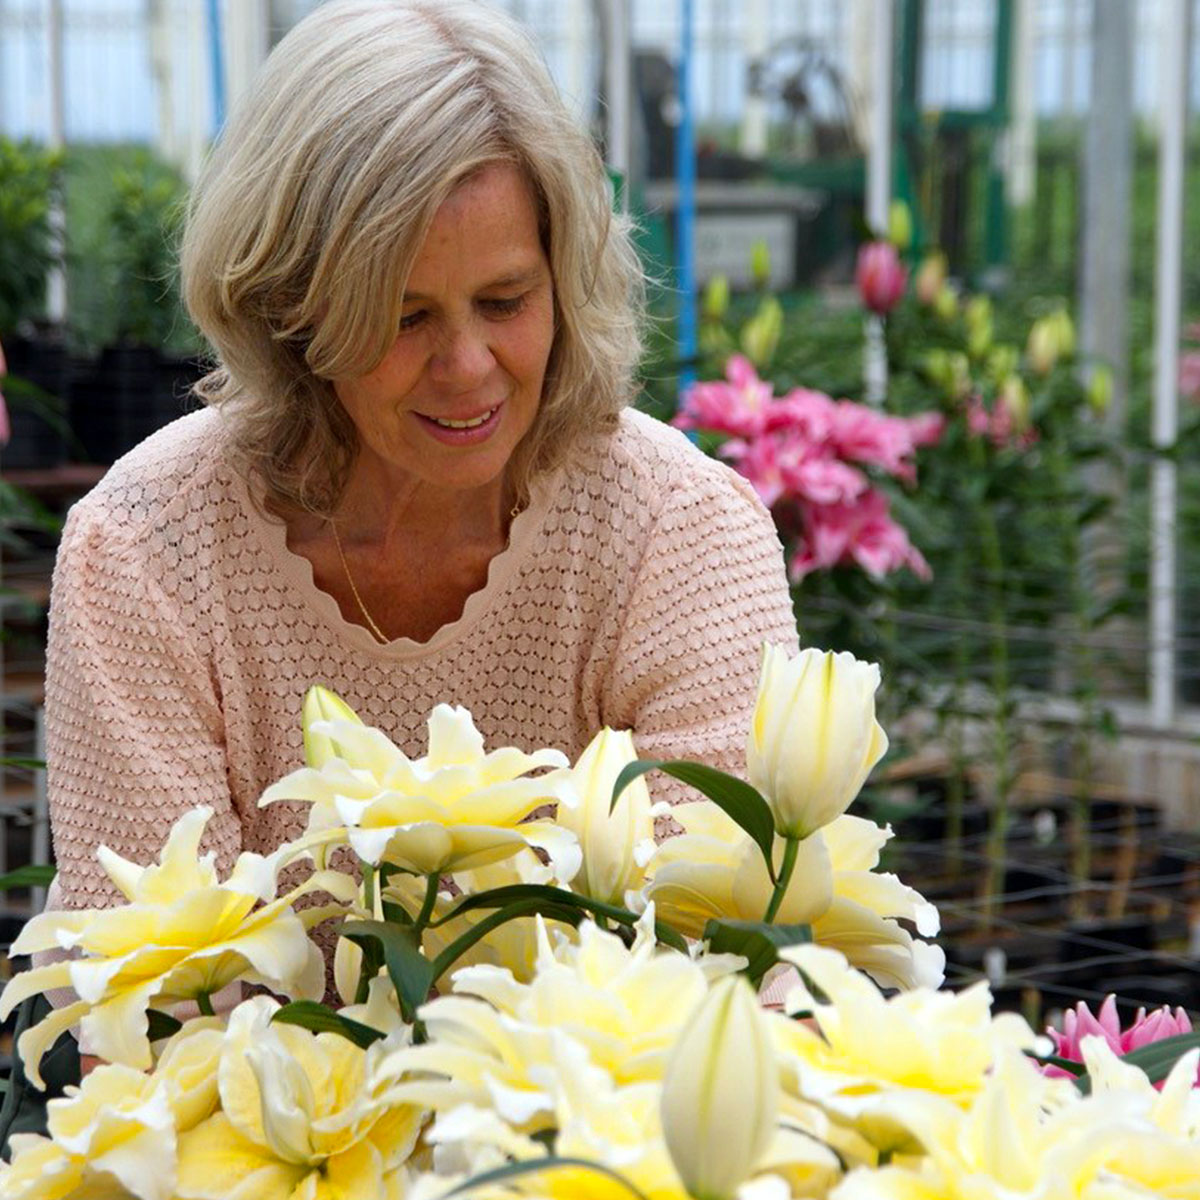 Dutch Miss Lily Dorien van den Berg Is Passionate About Roselilies feature - on Thursd